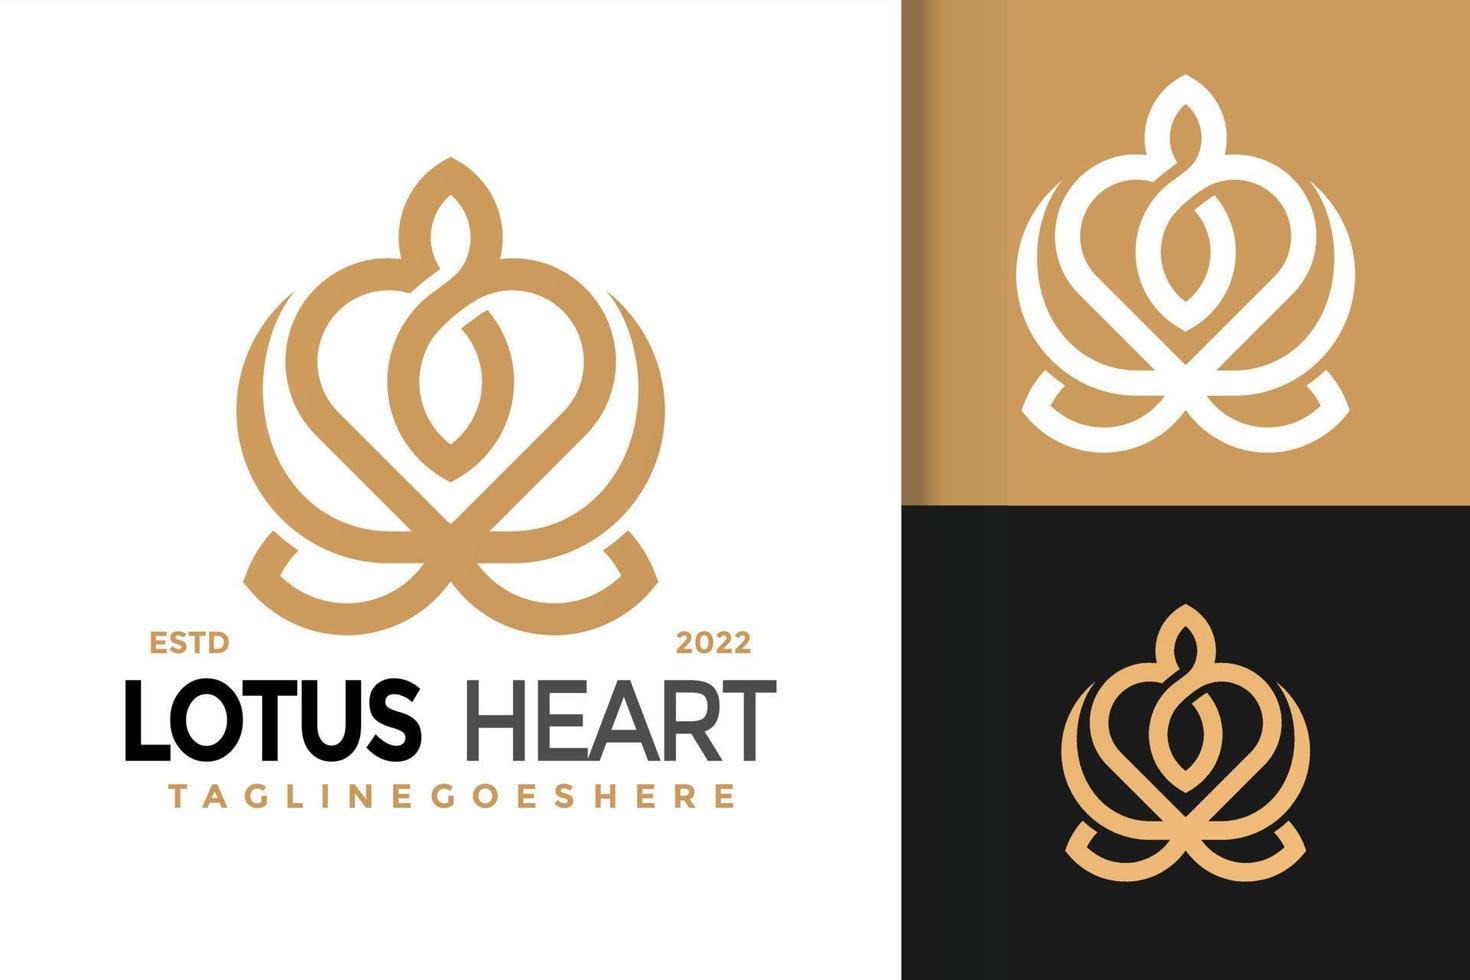 création de logo de coeur de lotus, vecteur de logos d'identité de marque, logo moderne, modèle d'illustration vectorielle de conceptions de logo